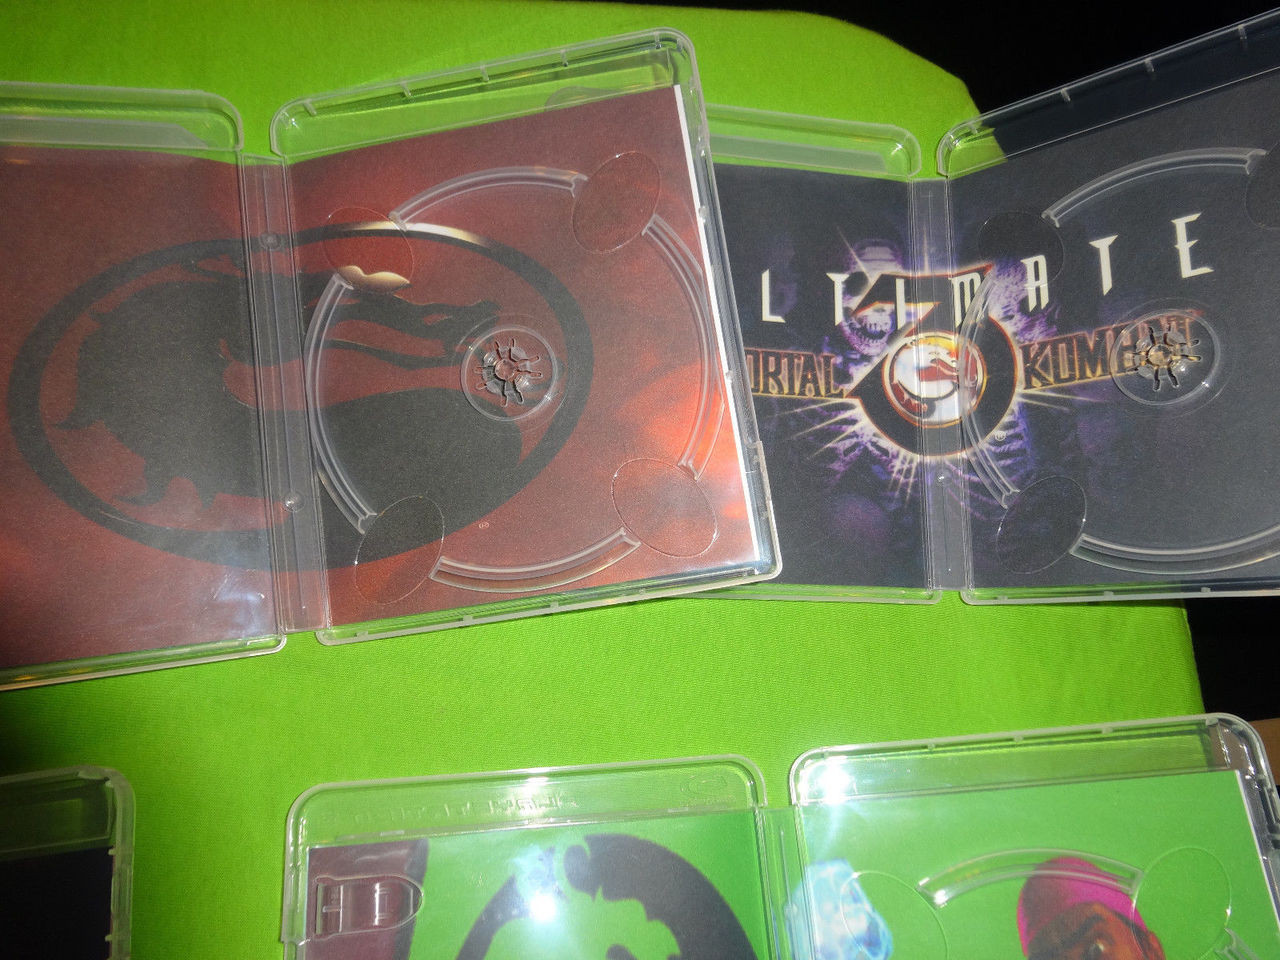 CUSTM CASE NO DISC Mortal Kombat 1 PS5 NO DISC SEE DESCRIPTION